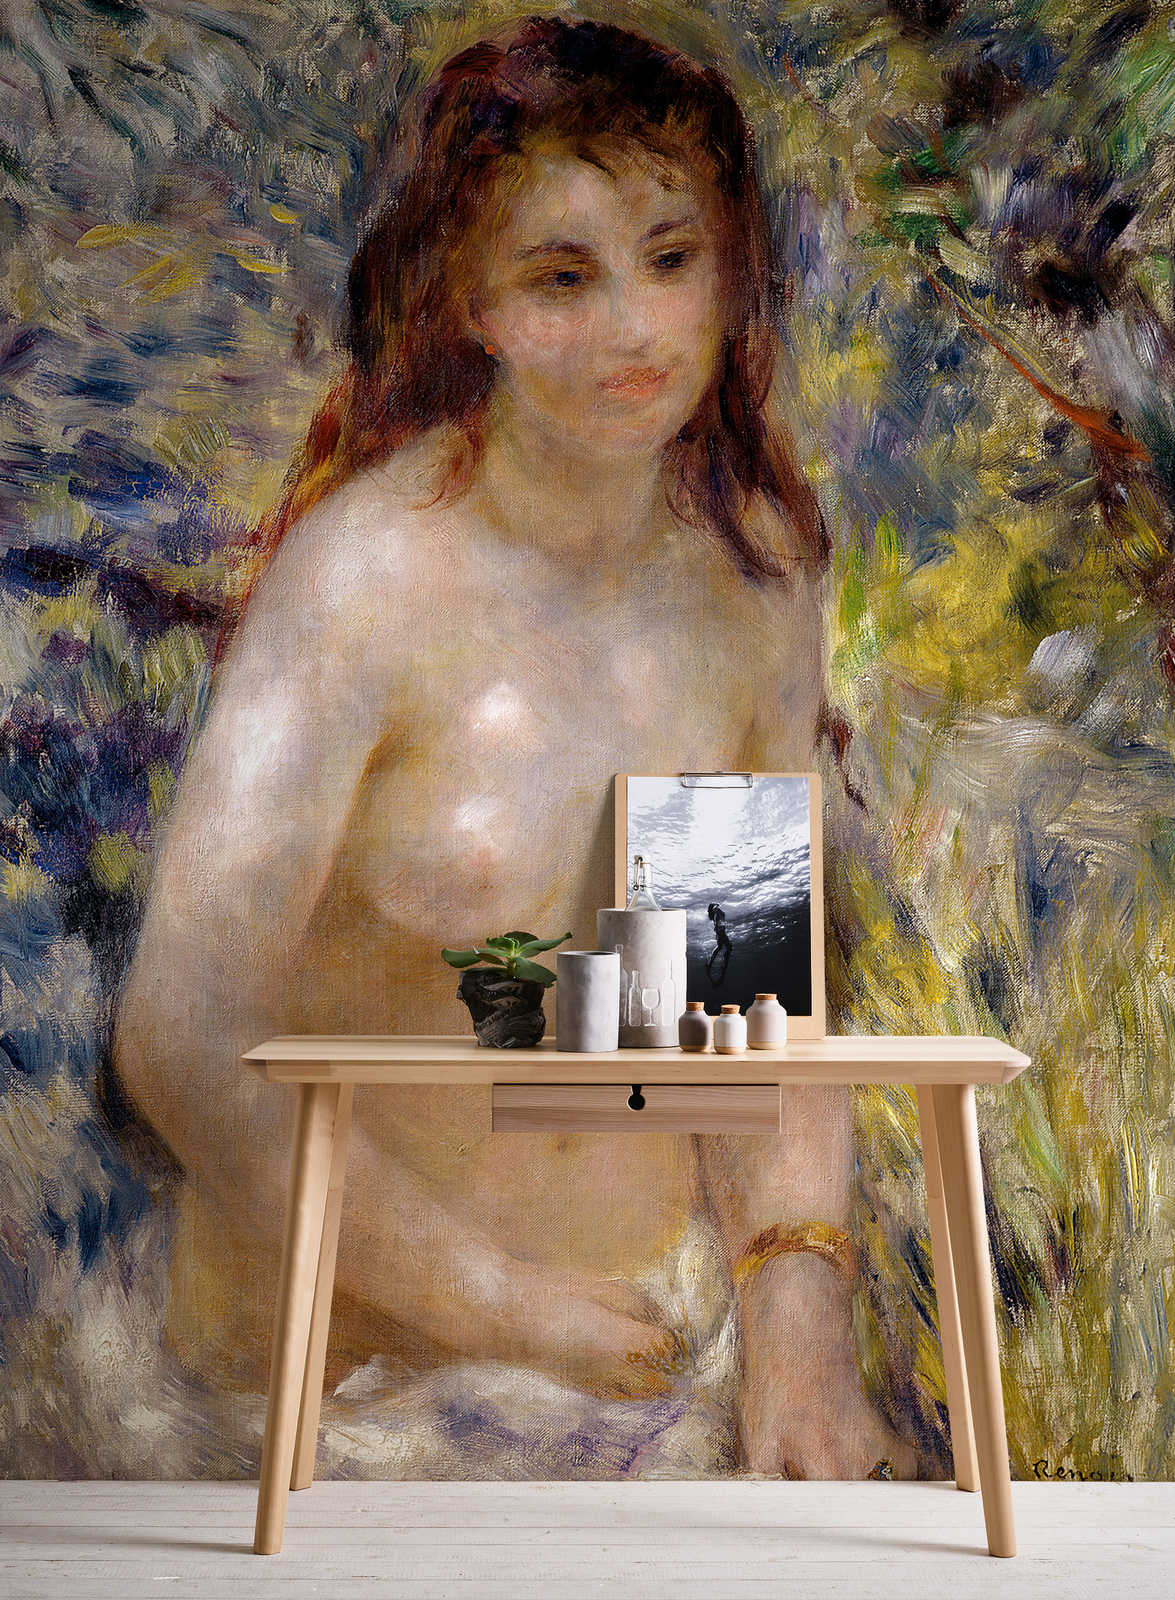             Fototapete "Wirkung des Sonnenlichts" von Pierre Auguste Renoir
        